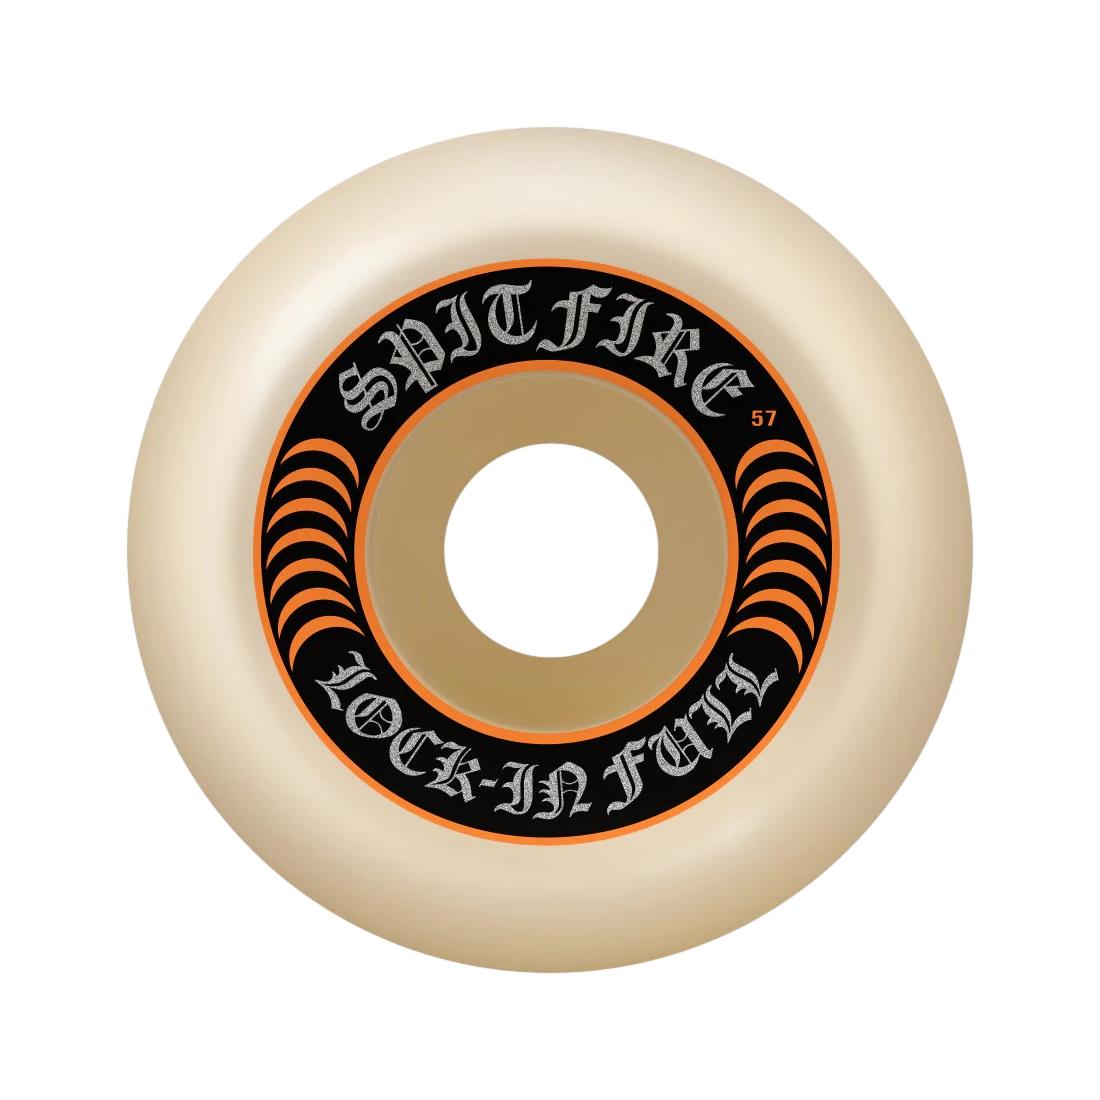 SF F499 Lock In Full 57 - Venue Skateboards